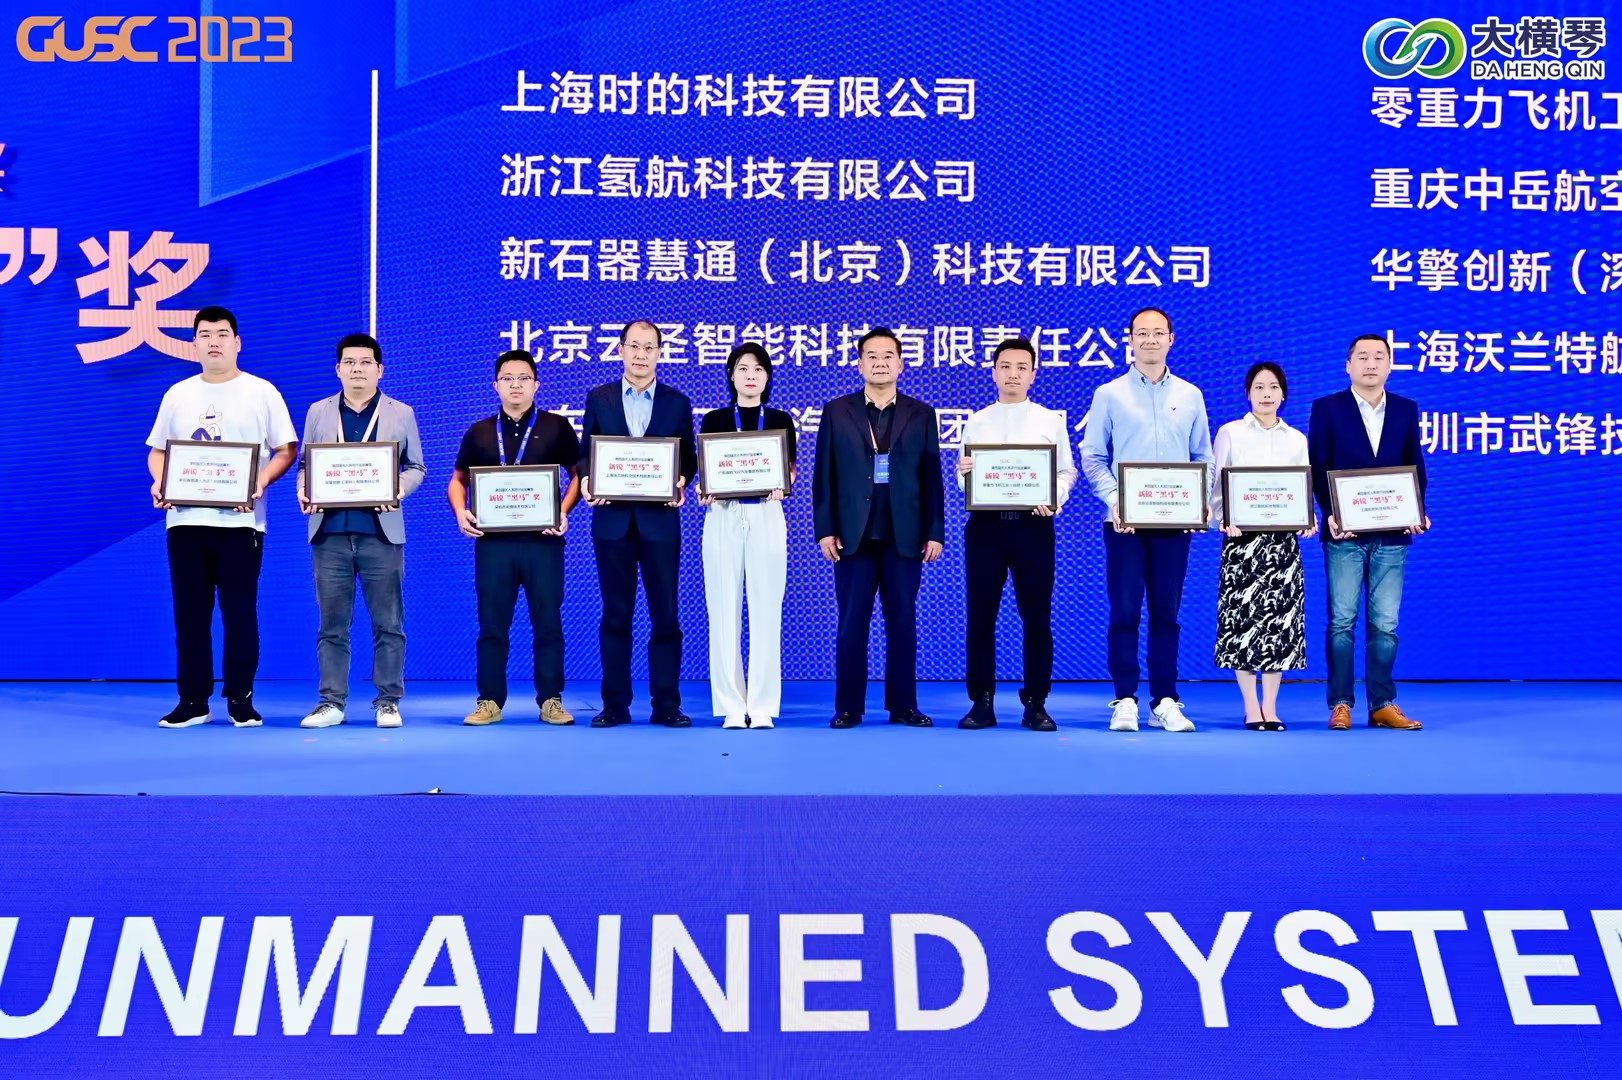 氢航科技在第六届全球无人系统大会荣获“新锐黑马奖”